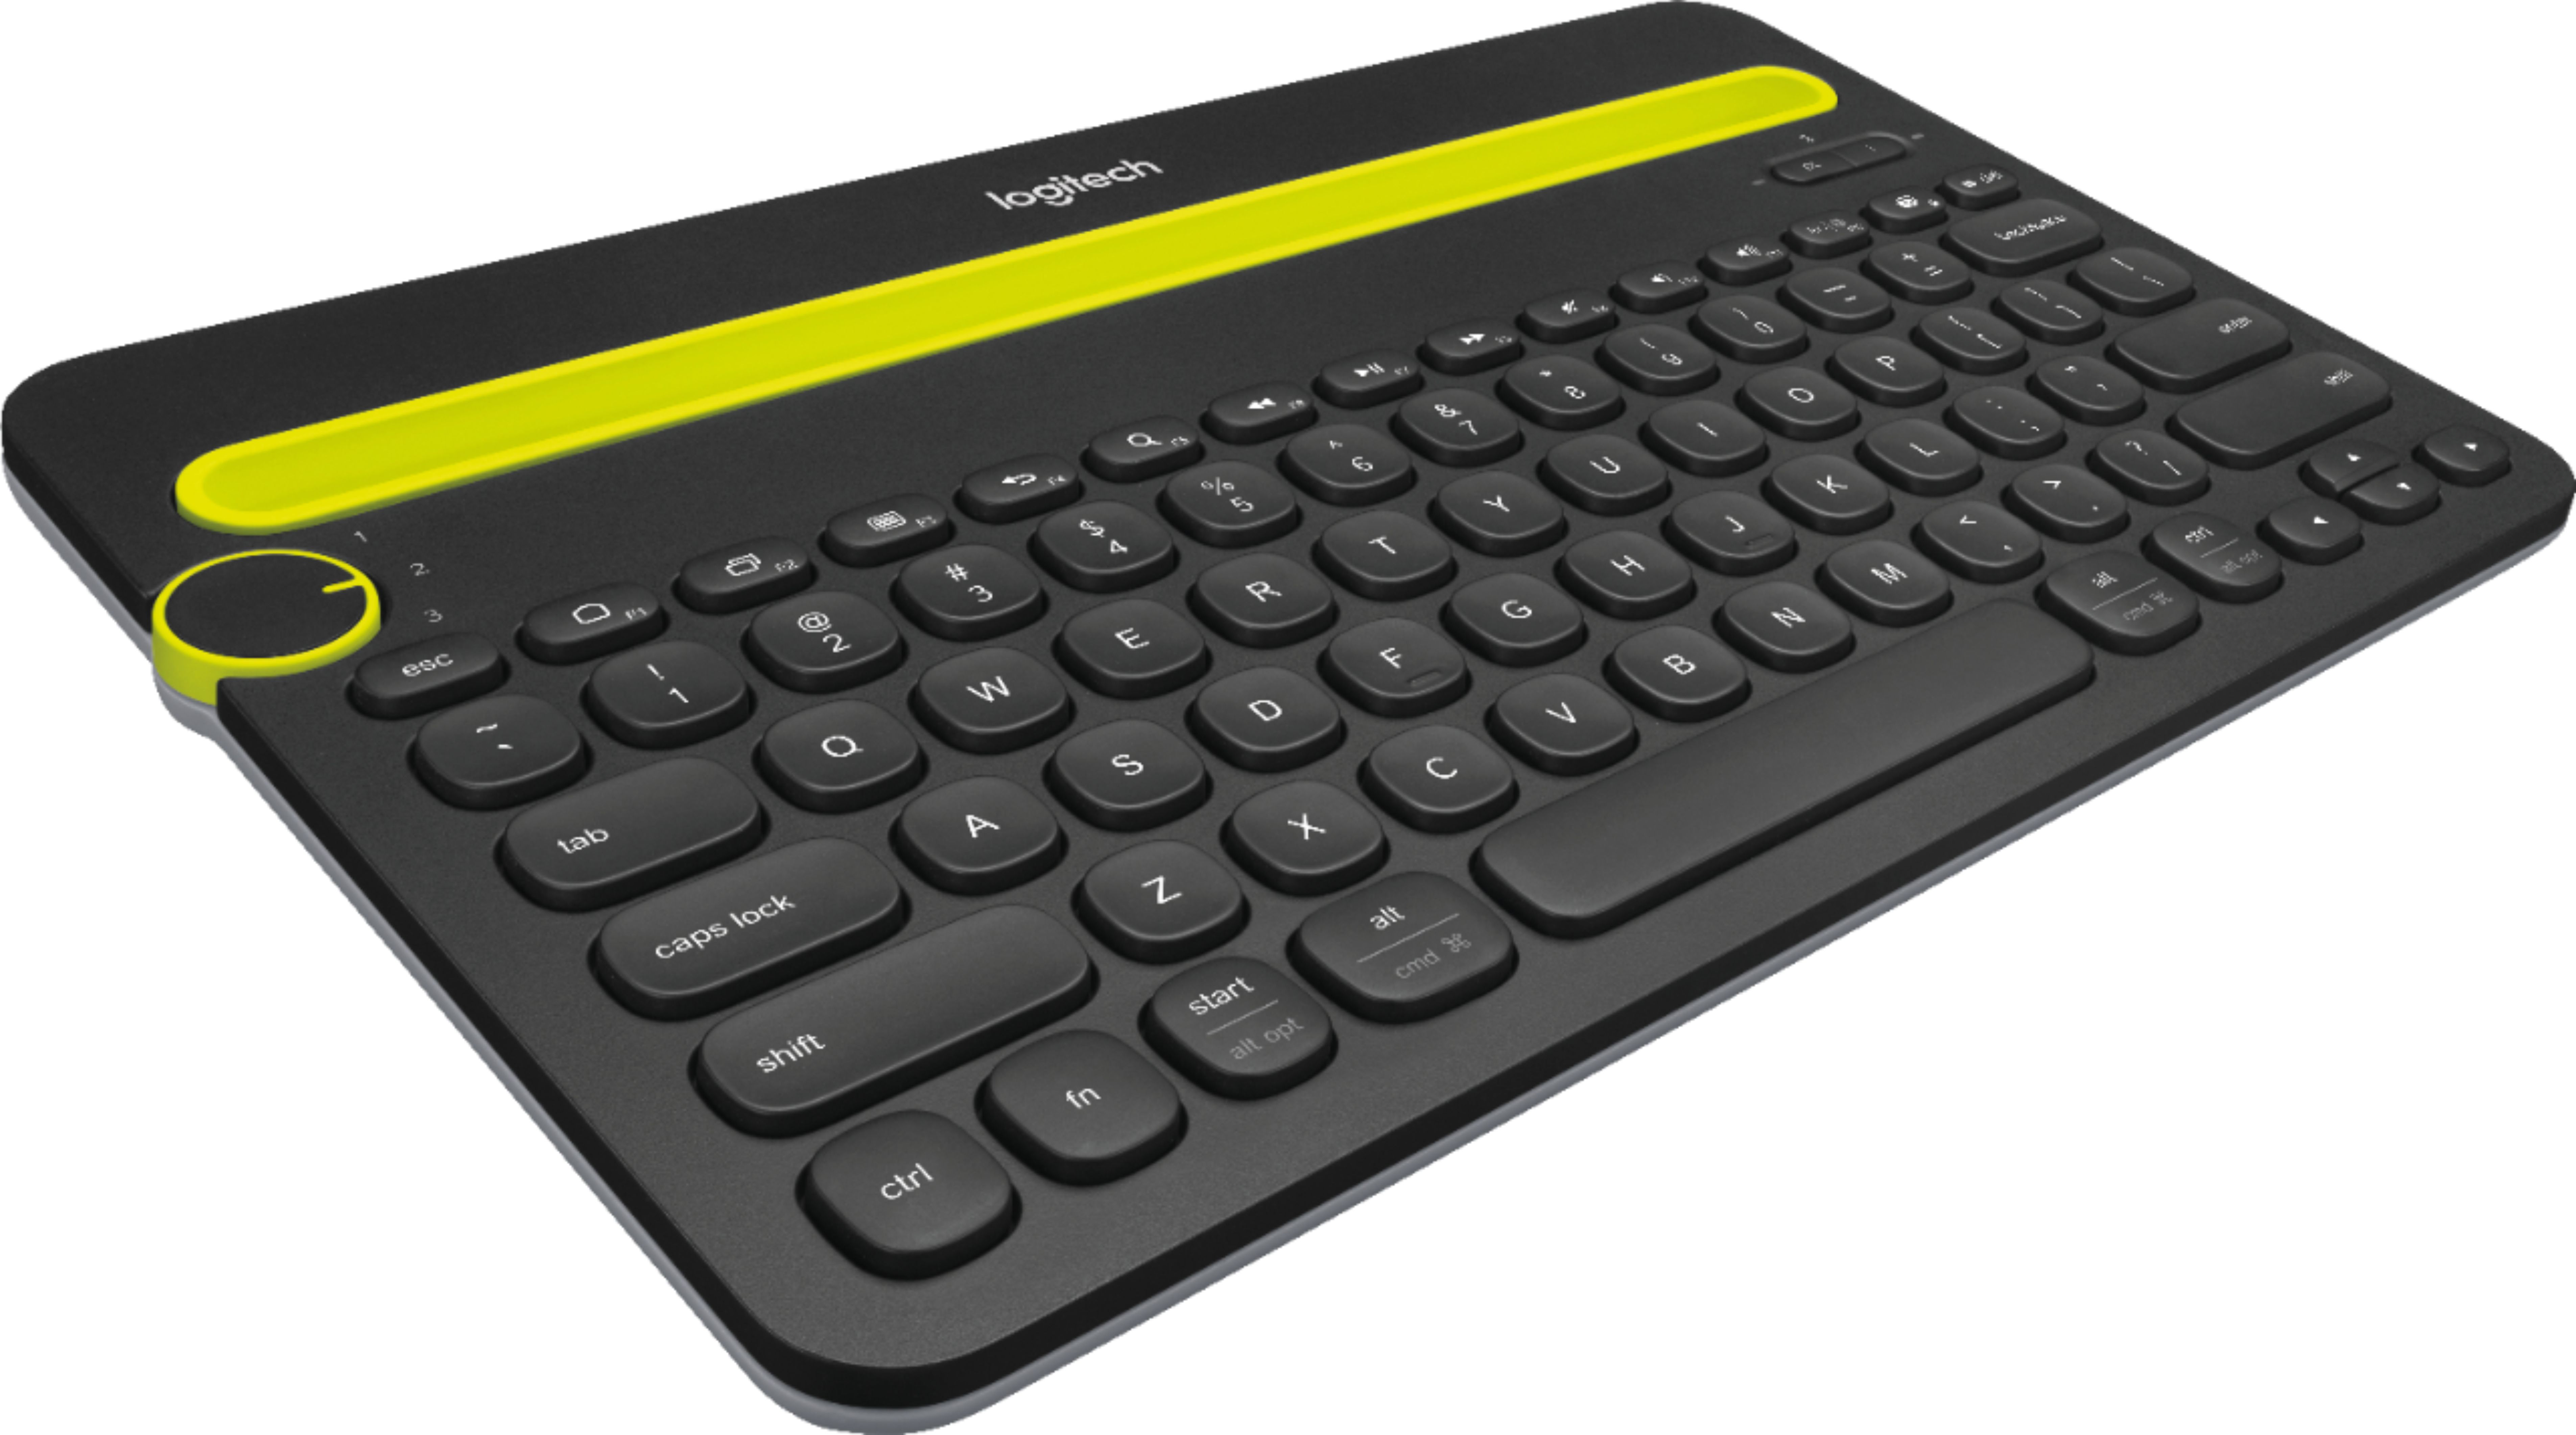 Angle View: Logitech - K800 Full-size Wireless Illuminated Keyboard - Black